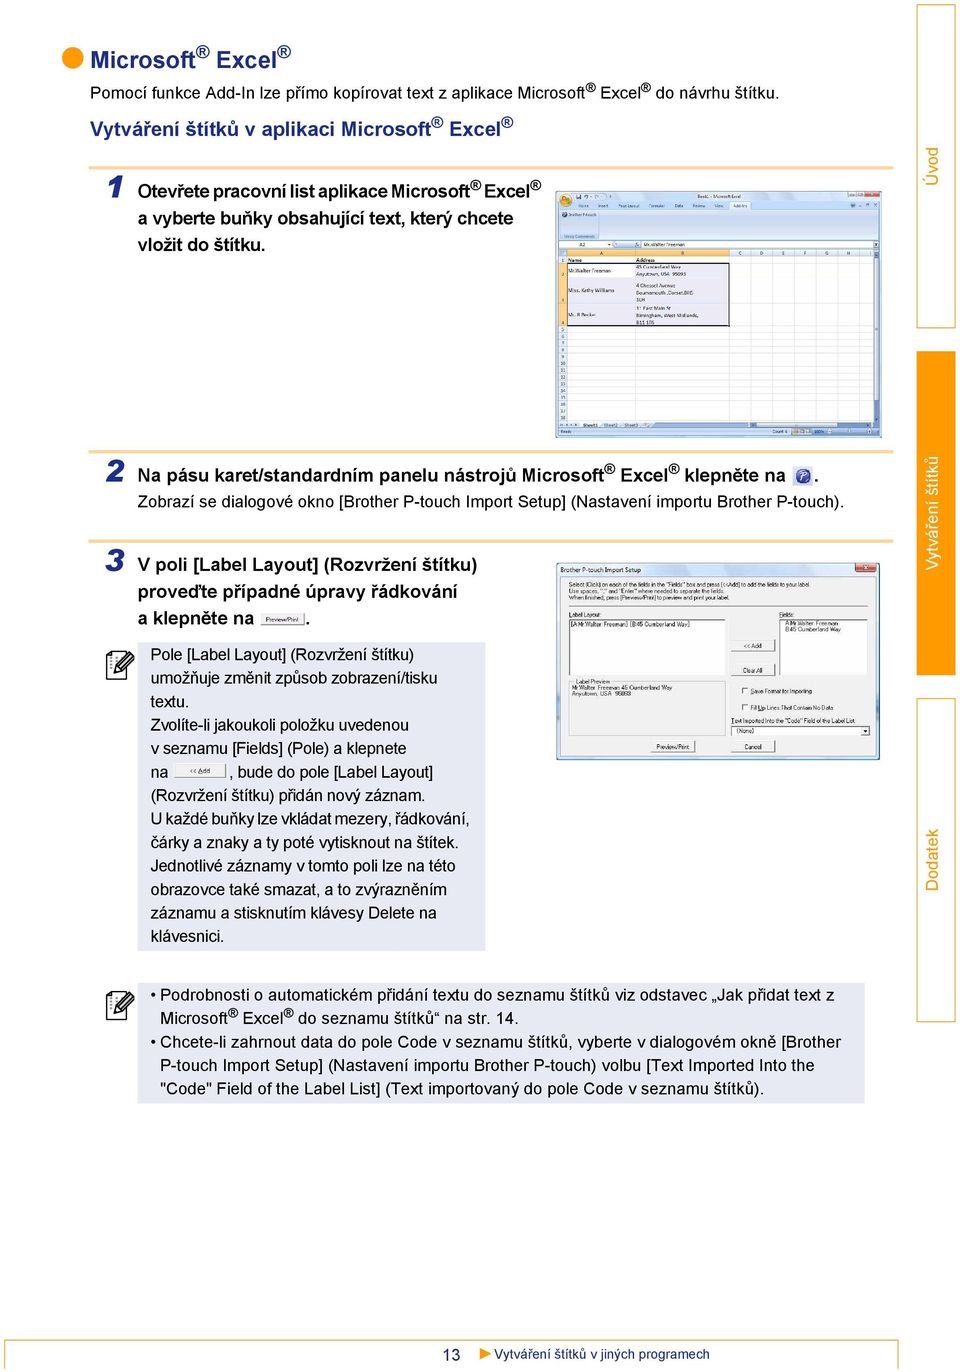 2 Na pásu karet/standardním panelu nástrojů Microsoft Excel klepněte na. Zobrazí se dialogové okno [Brother P-touch Import Setup] (Nastavení importu Brother P-touch).